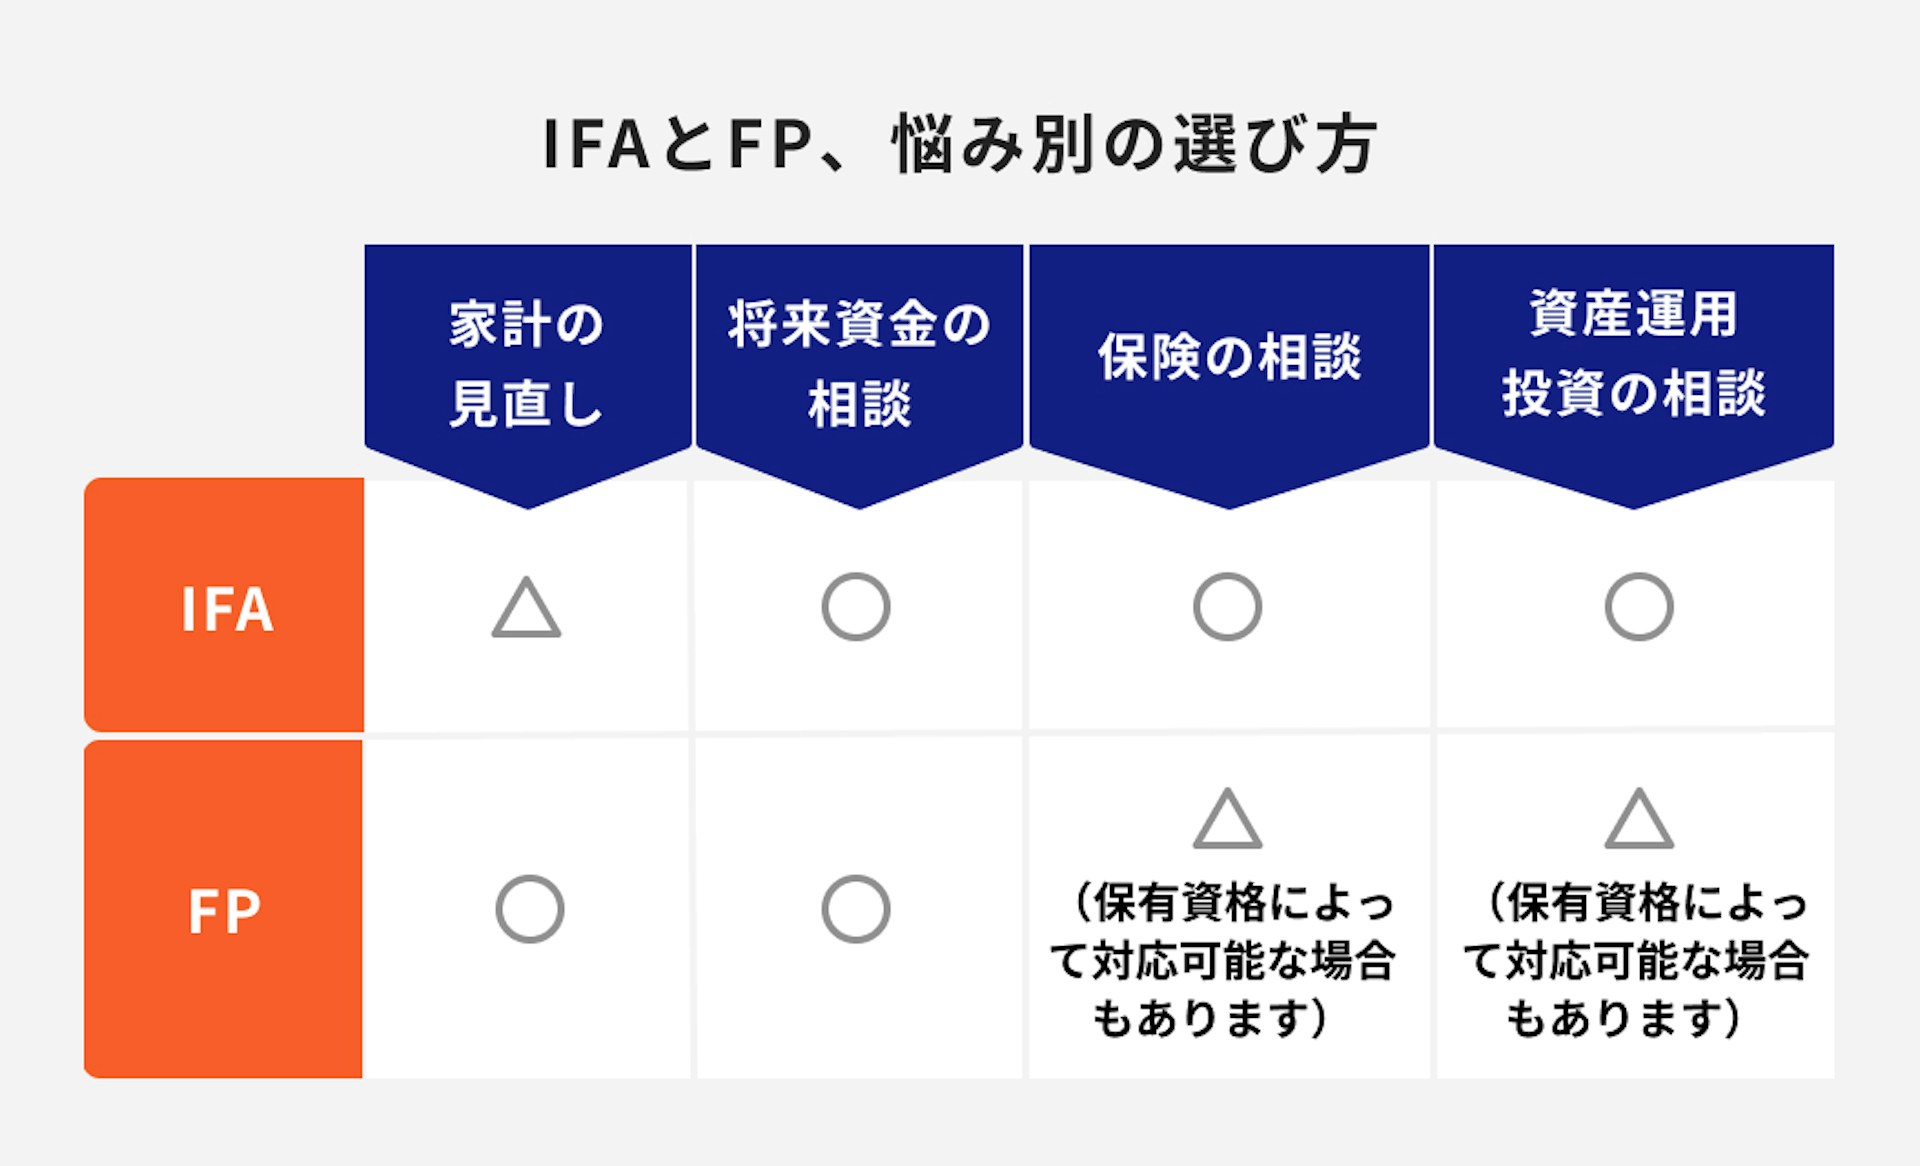 IFAとFP、悩み別の選び方